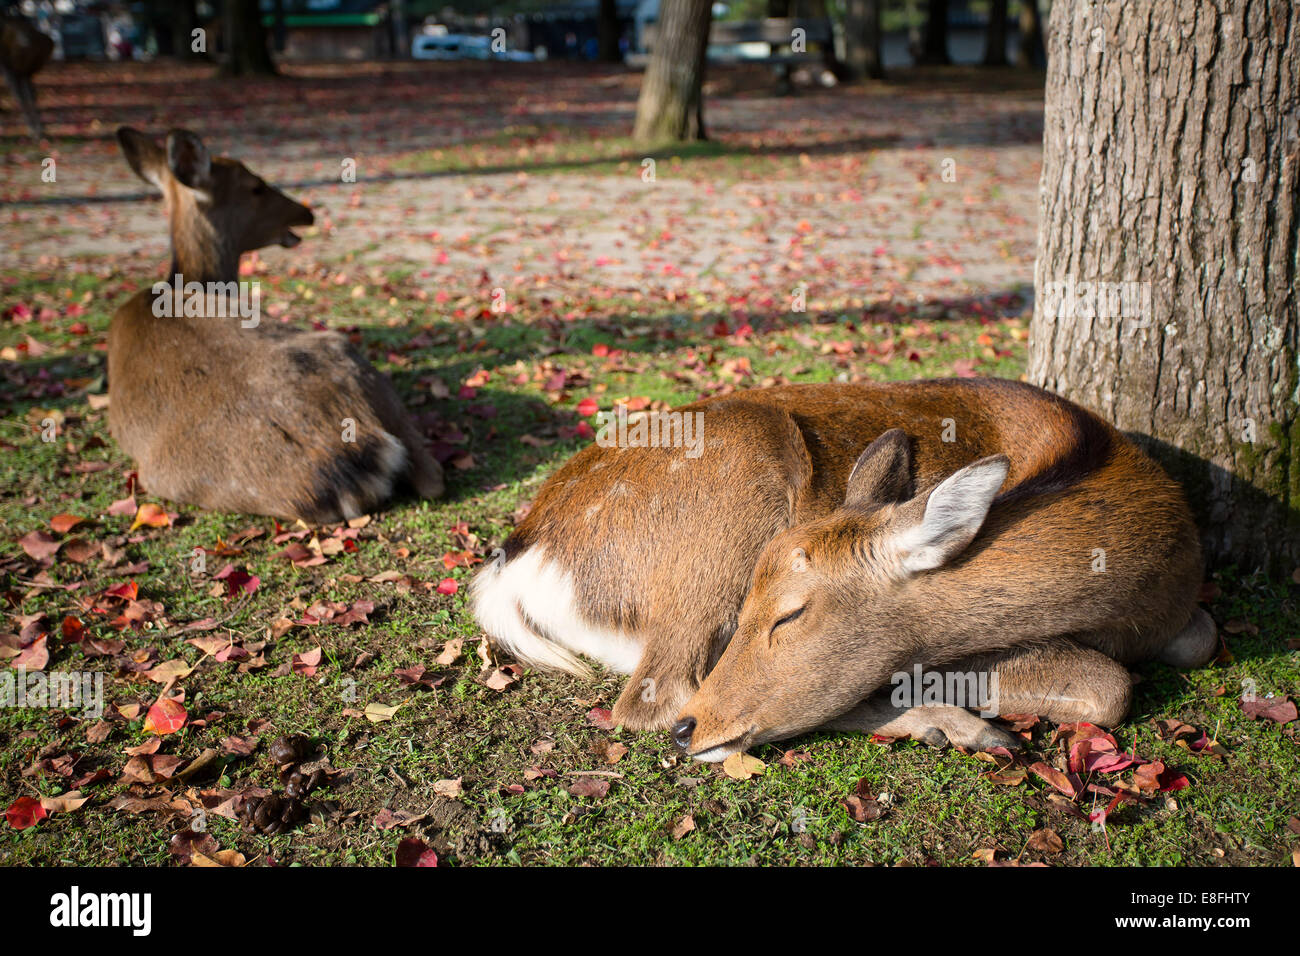 Japan, Kinki Region, Soraku District, Nara, Okuyama driveway, Bambi deers lying under tree Stock Photo